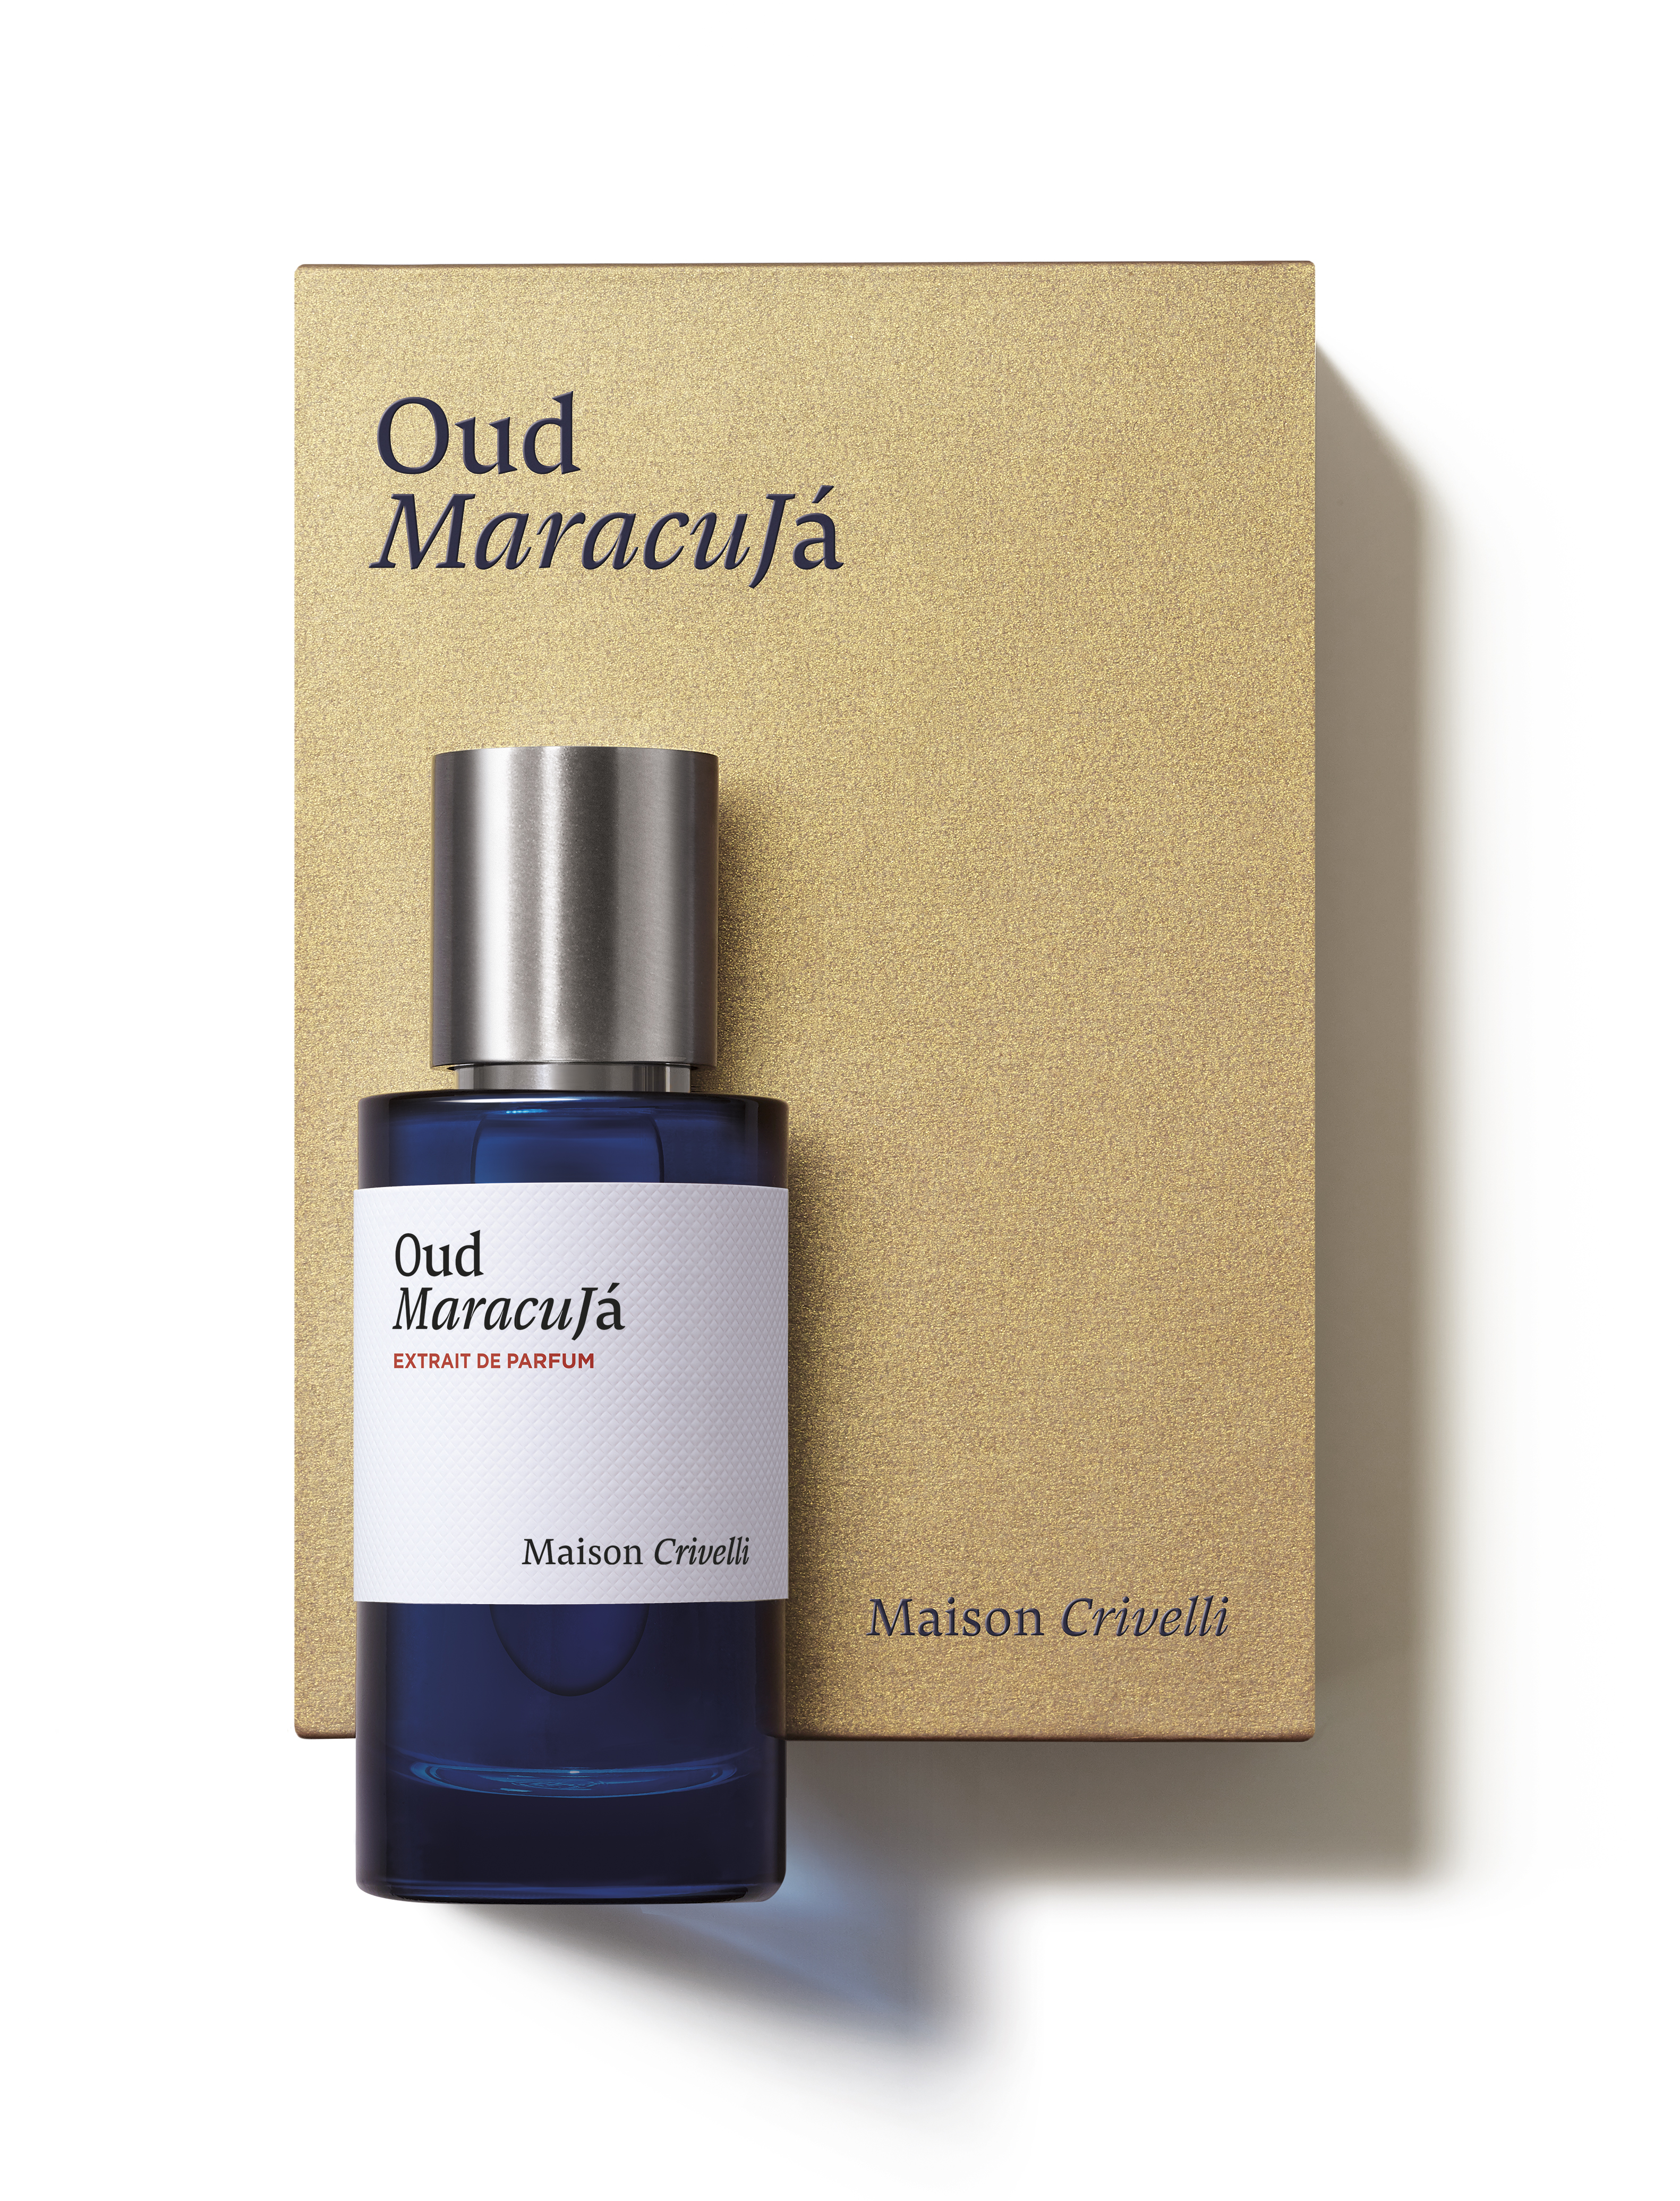 Maison Crivelli presenta Oud Maracujá